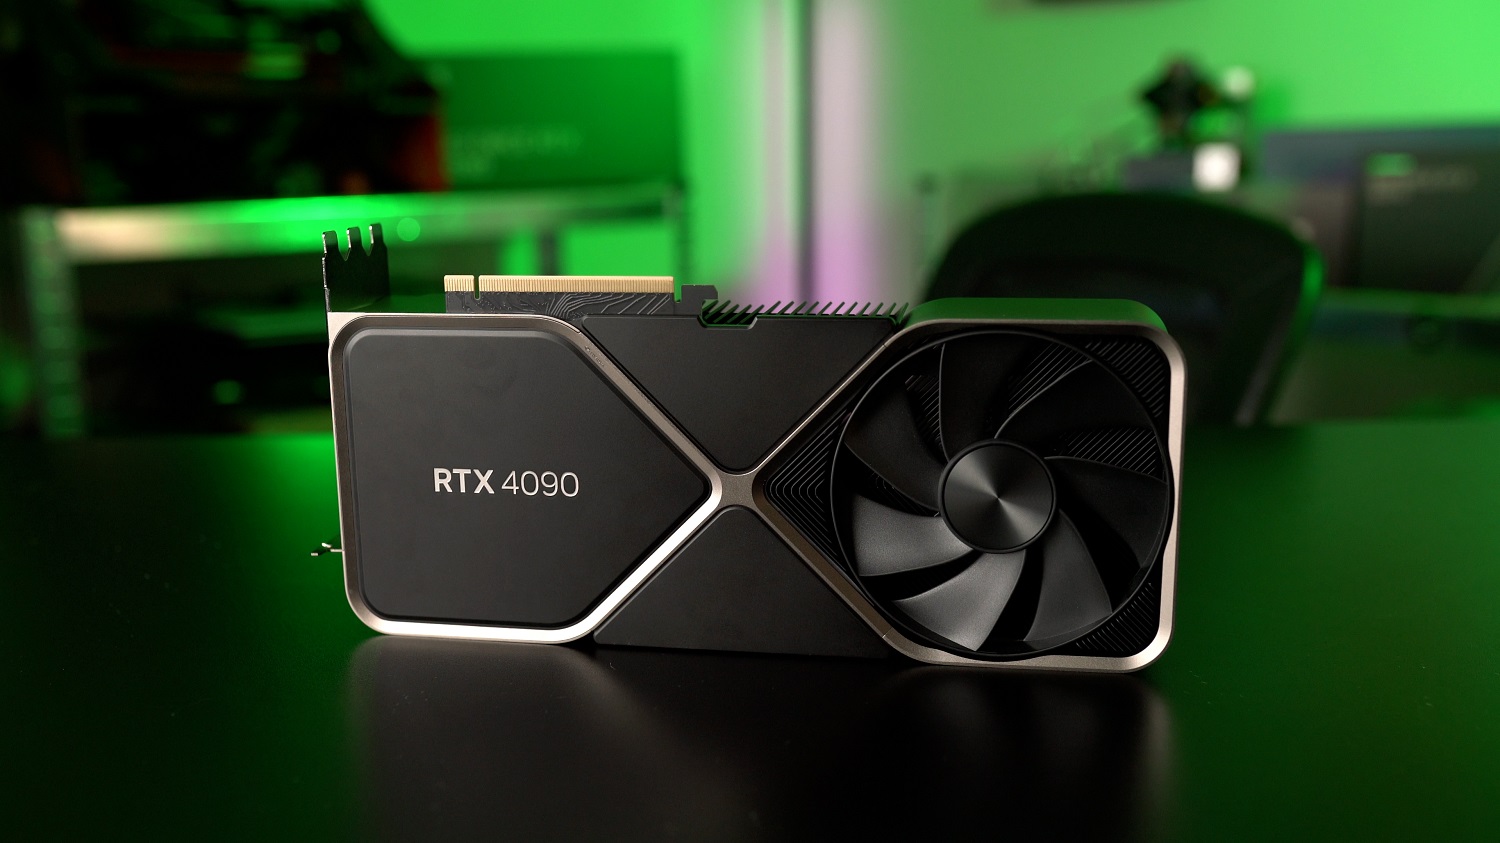 Nvidia GeForce RTX 4090 GPU.